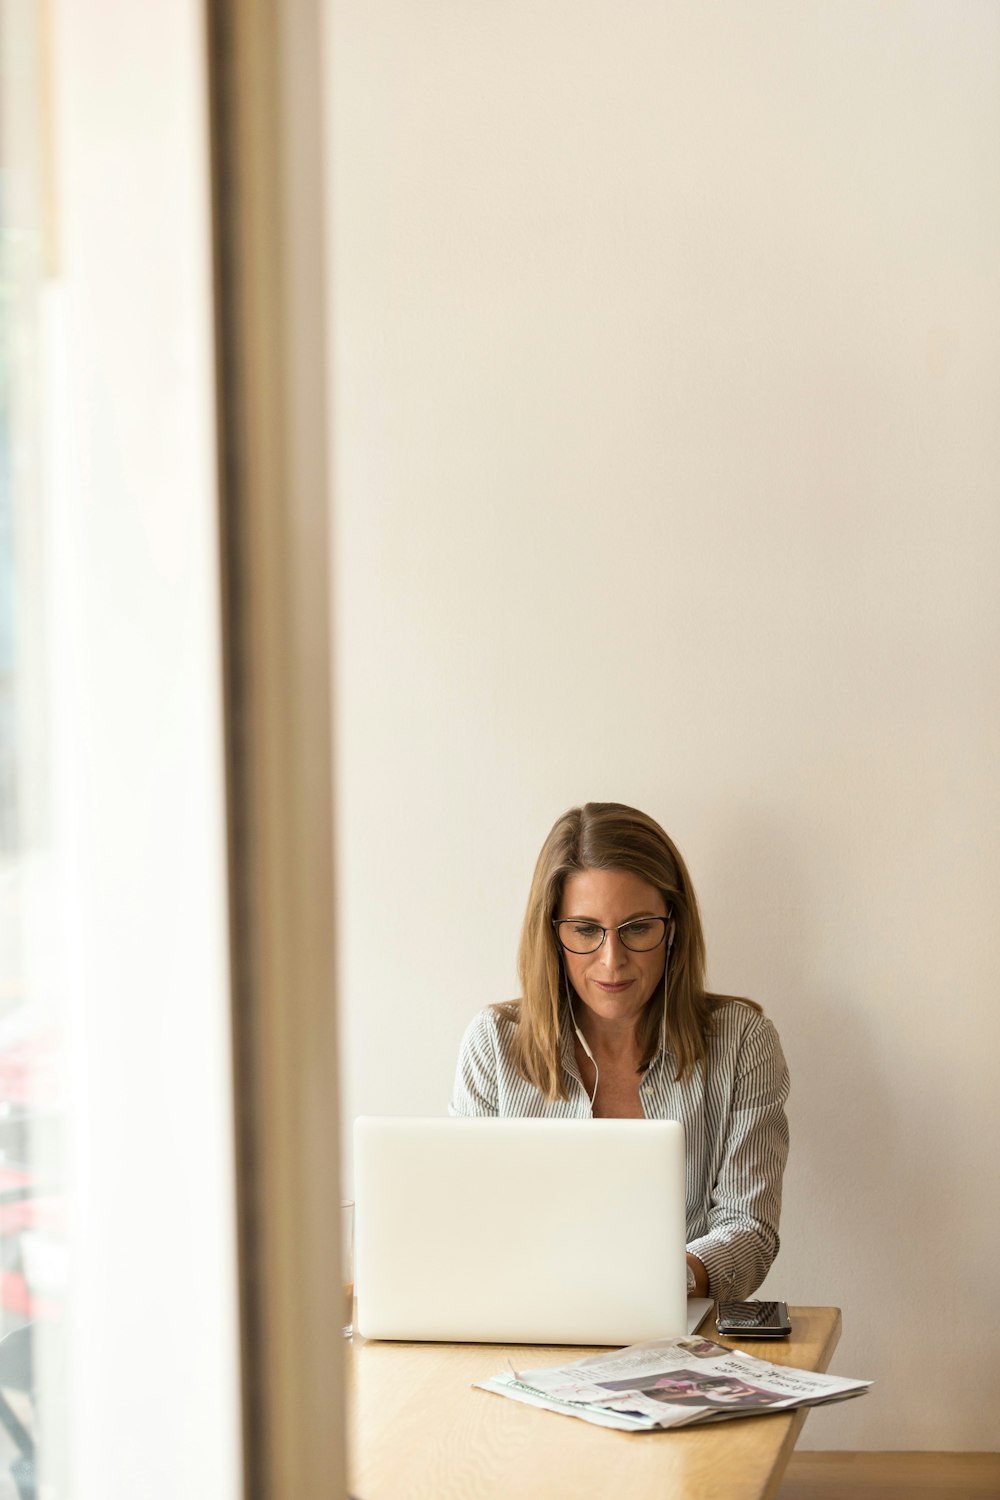 灰色の縞模様のドレスシャツを着た女性が、白いラップトップコンピュータの前にある茶色の木製のテーブルの近くに座っている